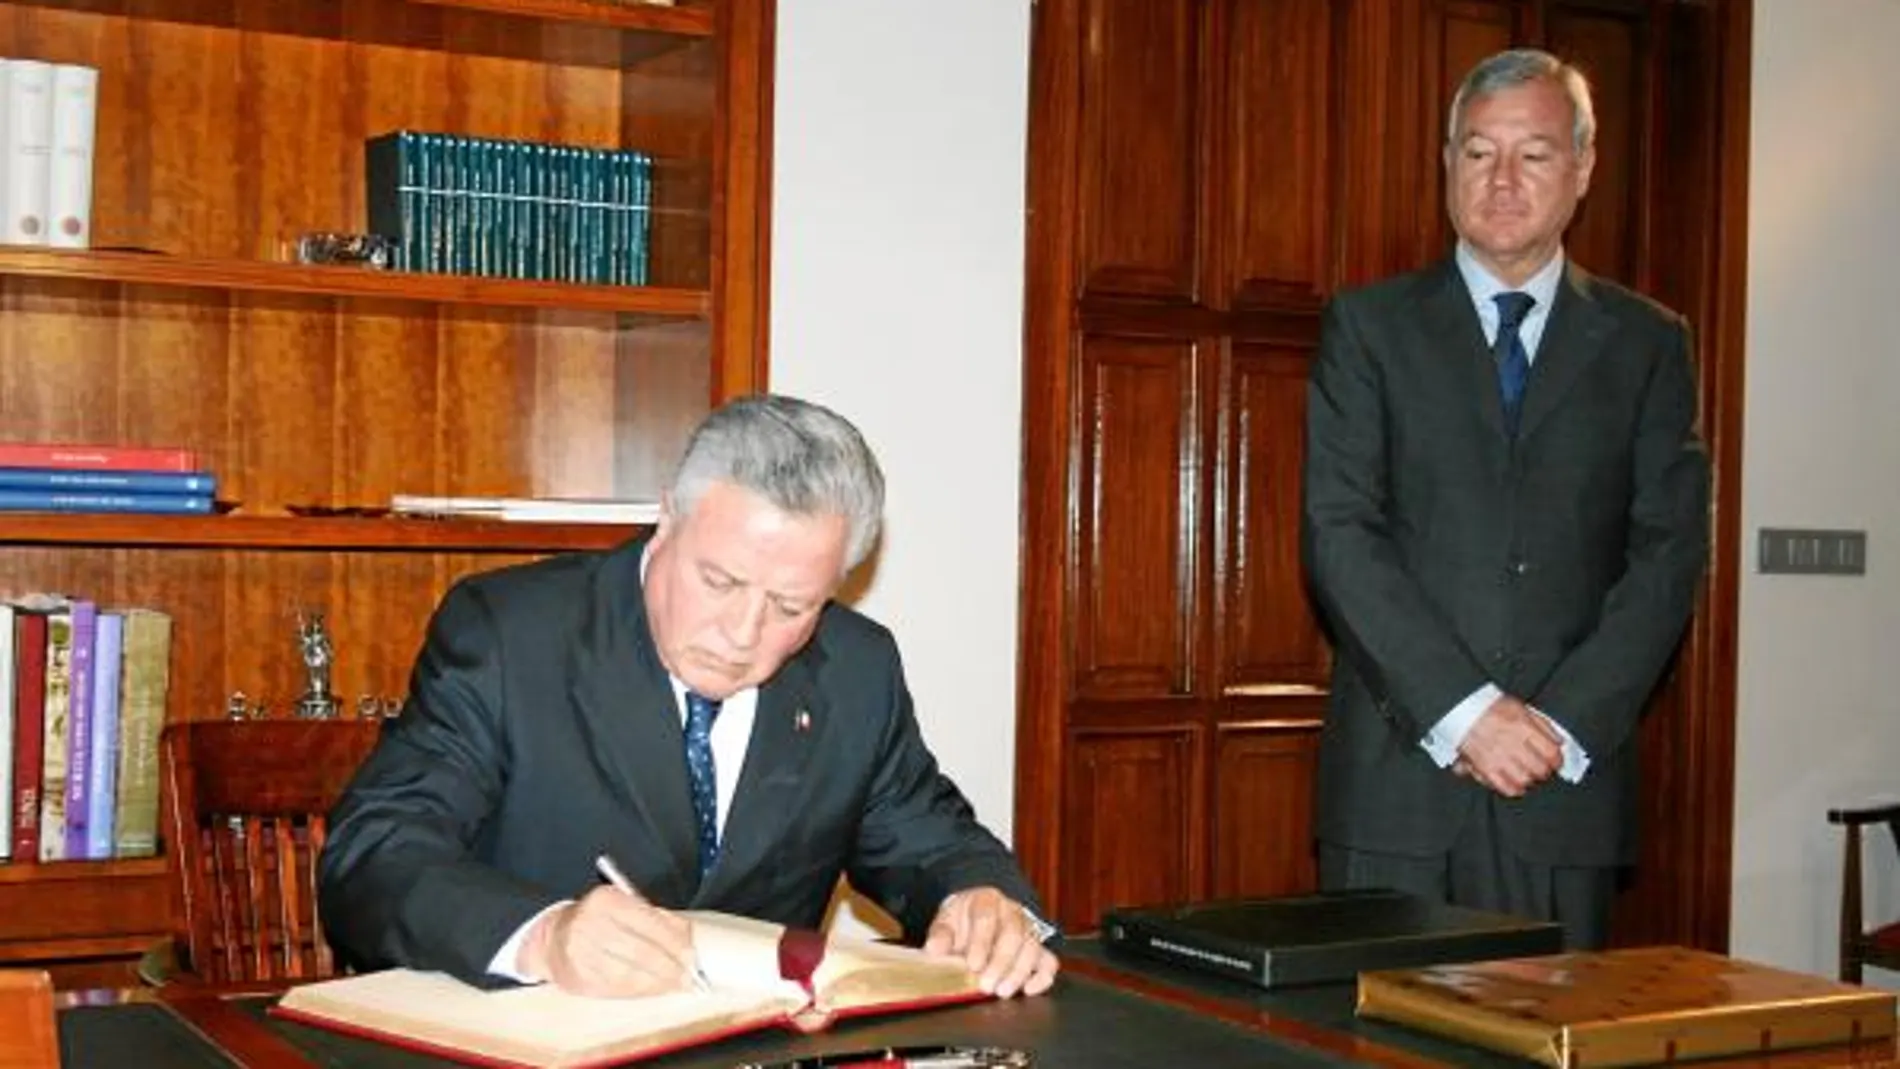 El embajador de México en España, Jorge Zermeño, firmó en el Libro de Oro ante la mirada de Valcárcel